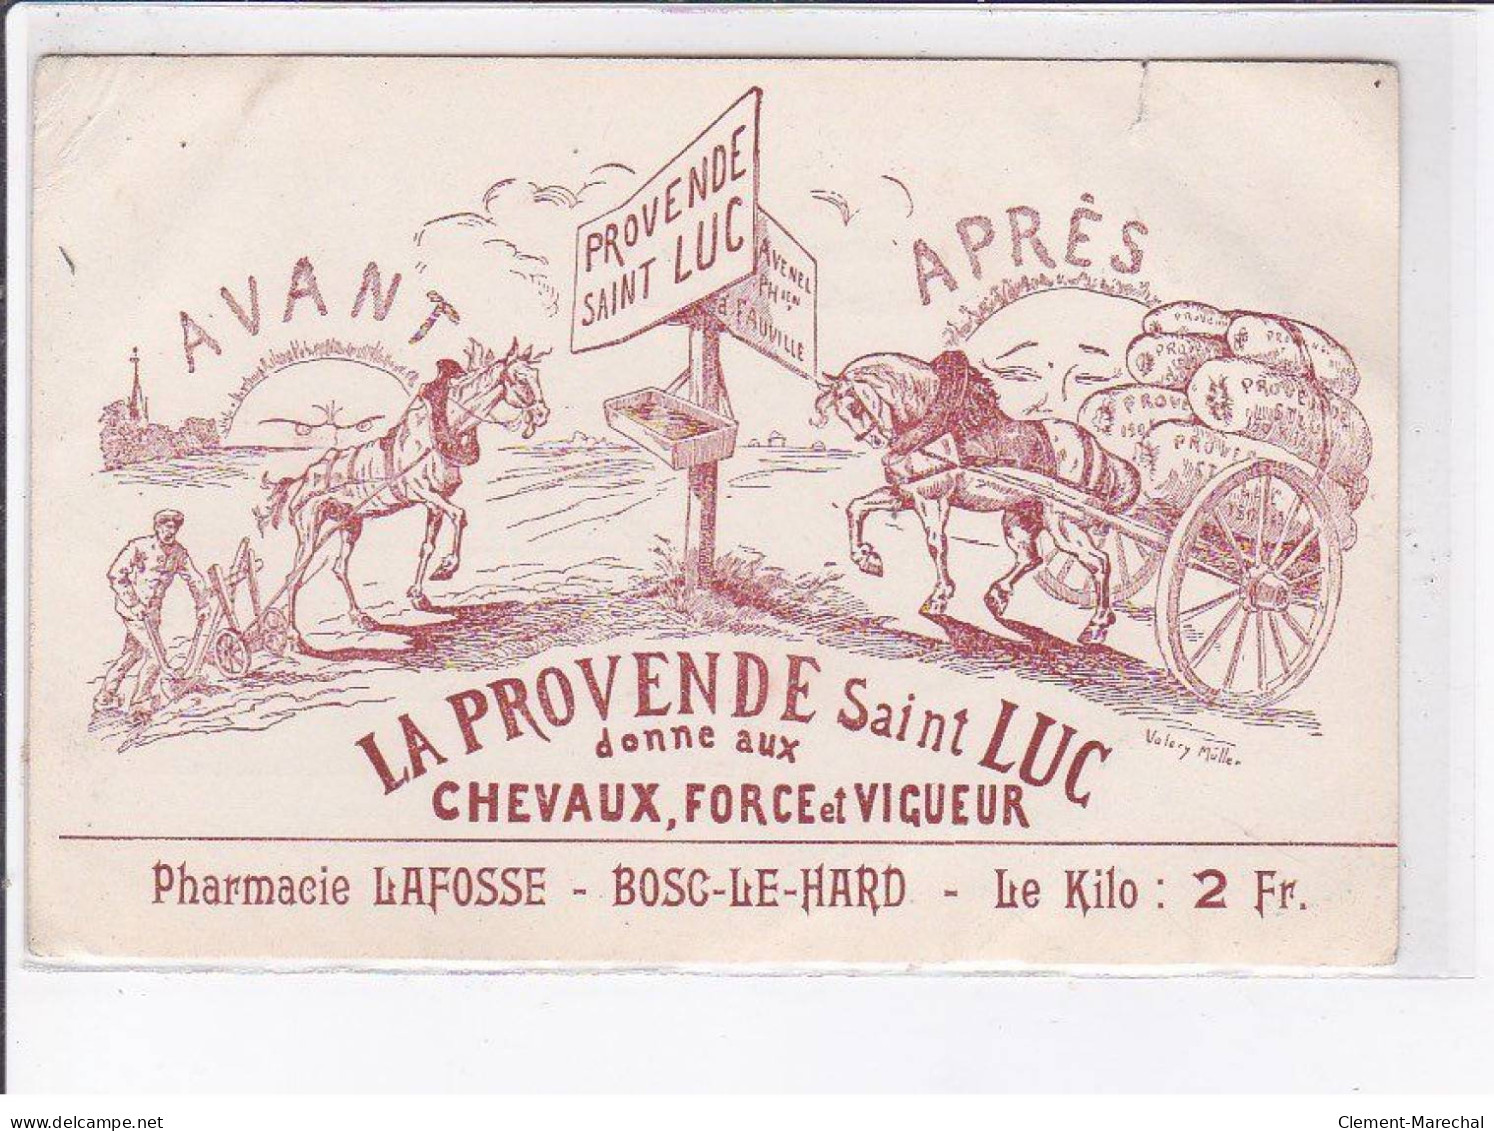 PUBLICITE: La Provende Saint-luc Donne Aux Chevaux, Force Et Vigueur, Pharmacie Lafosse, Bosc-le-hard - état - Advertising